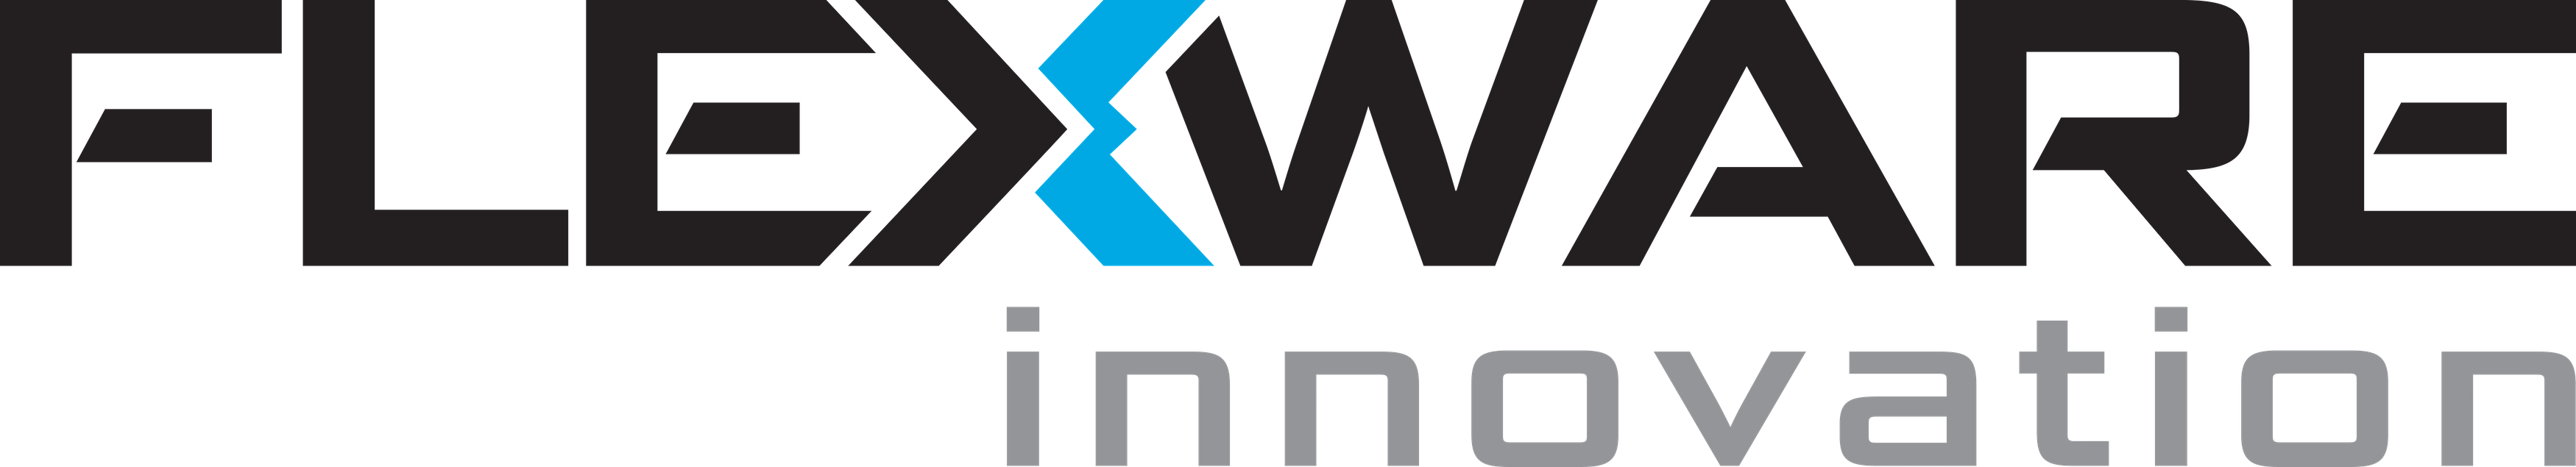 Flexware Innovation Logo